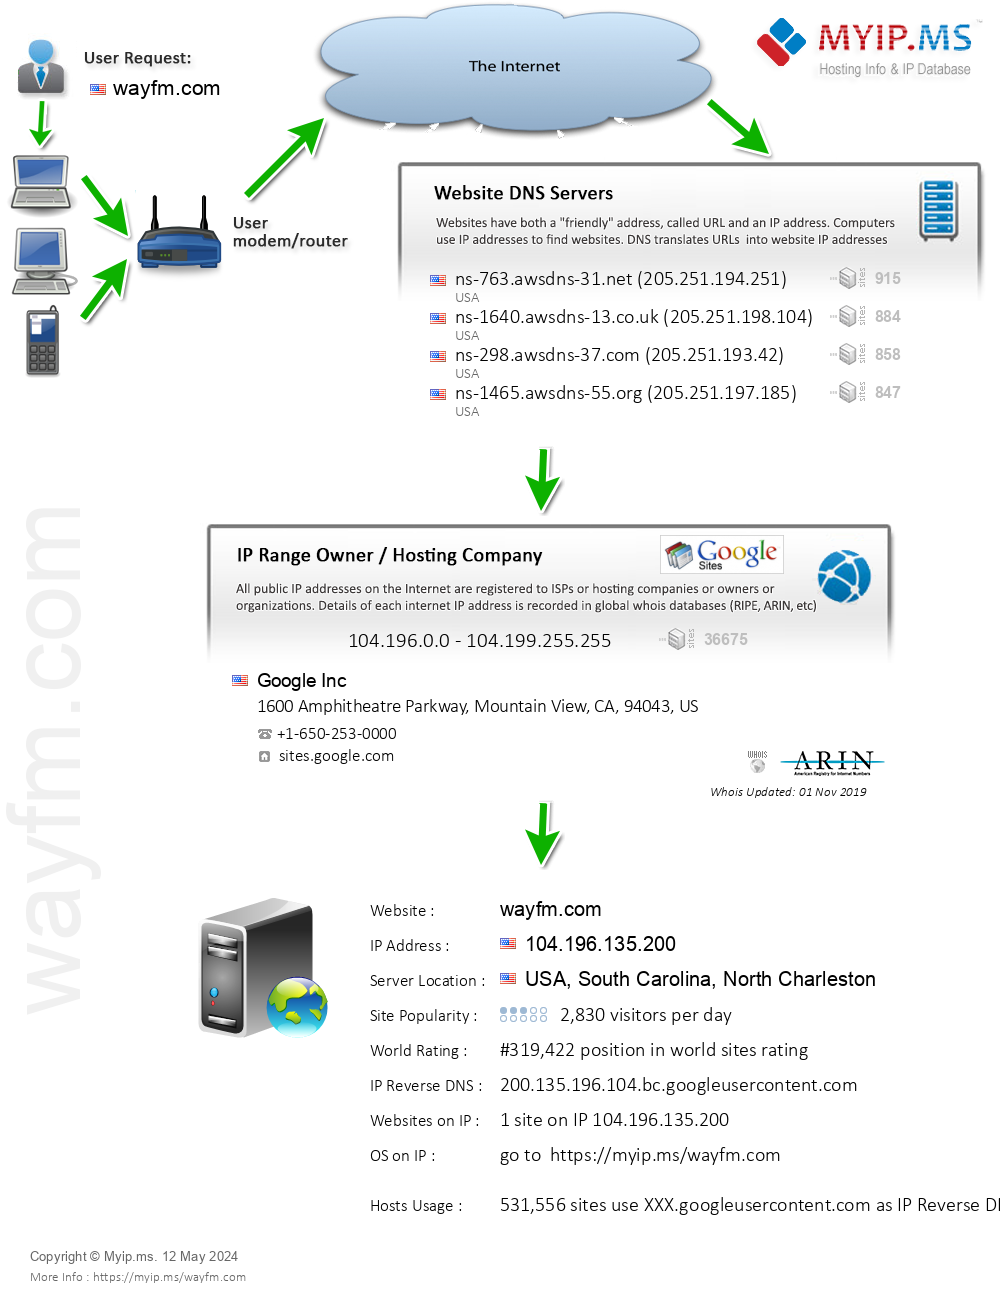 Wayfm.com - Website Hosting Visual IP Diagram